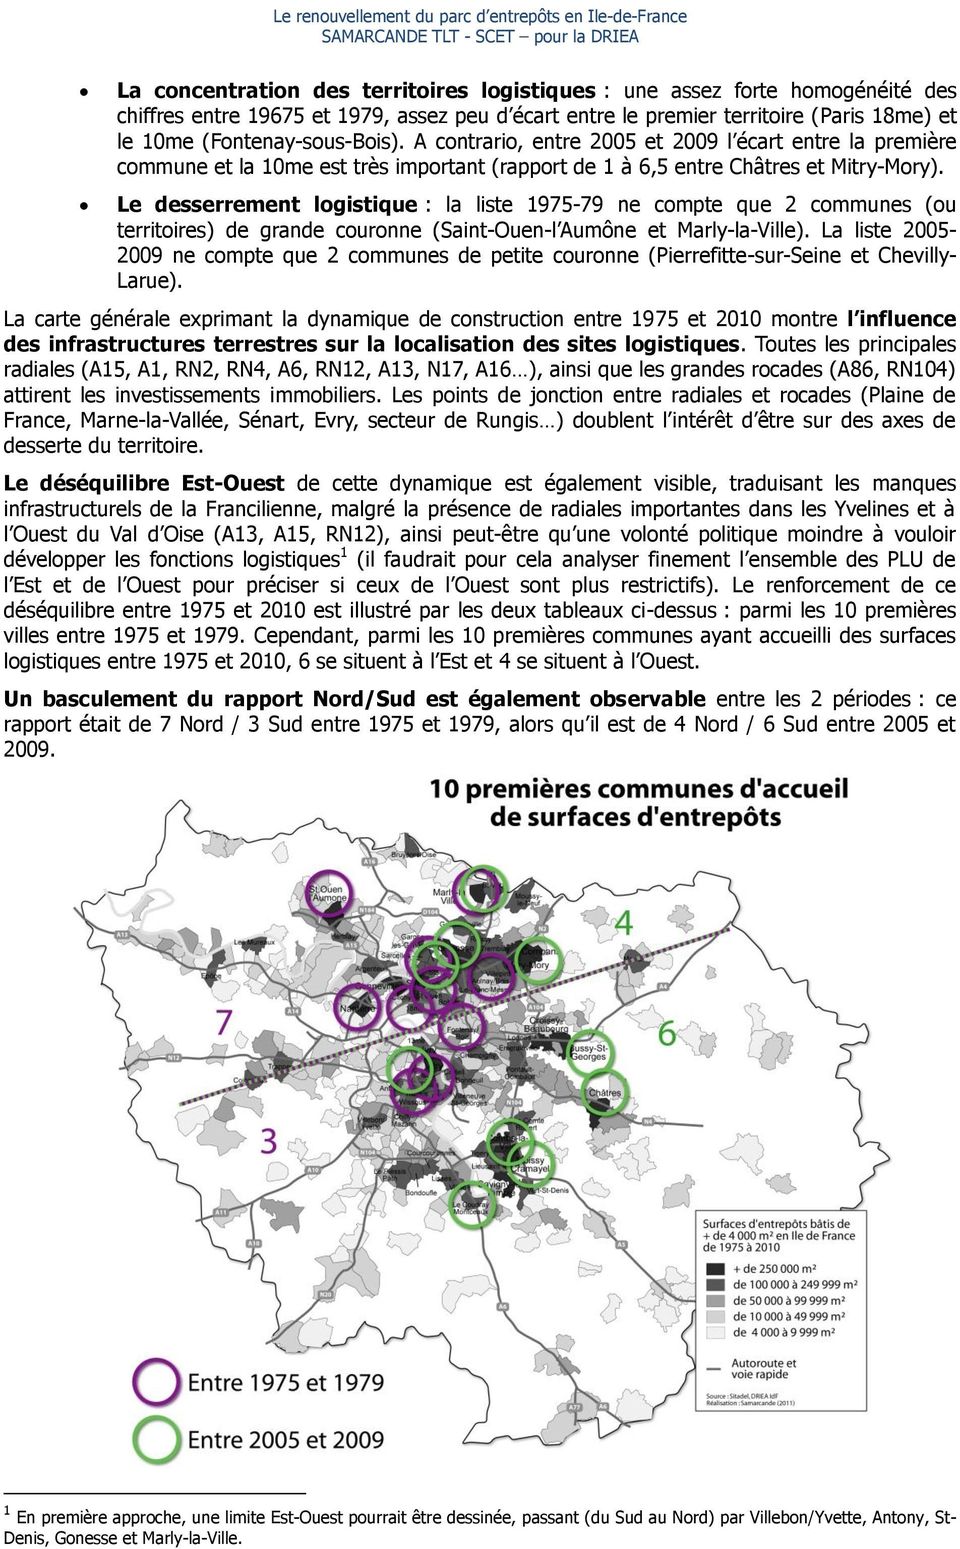 Le desserrement logistique : la liste 1975-79 ne compte que 2 communes (ou territoires) de grande couronne (Saint-Ouen-l Aumône et Marly-la-Ville).